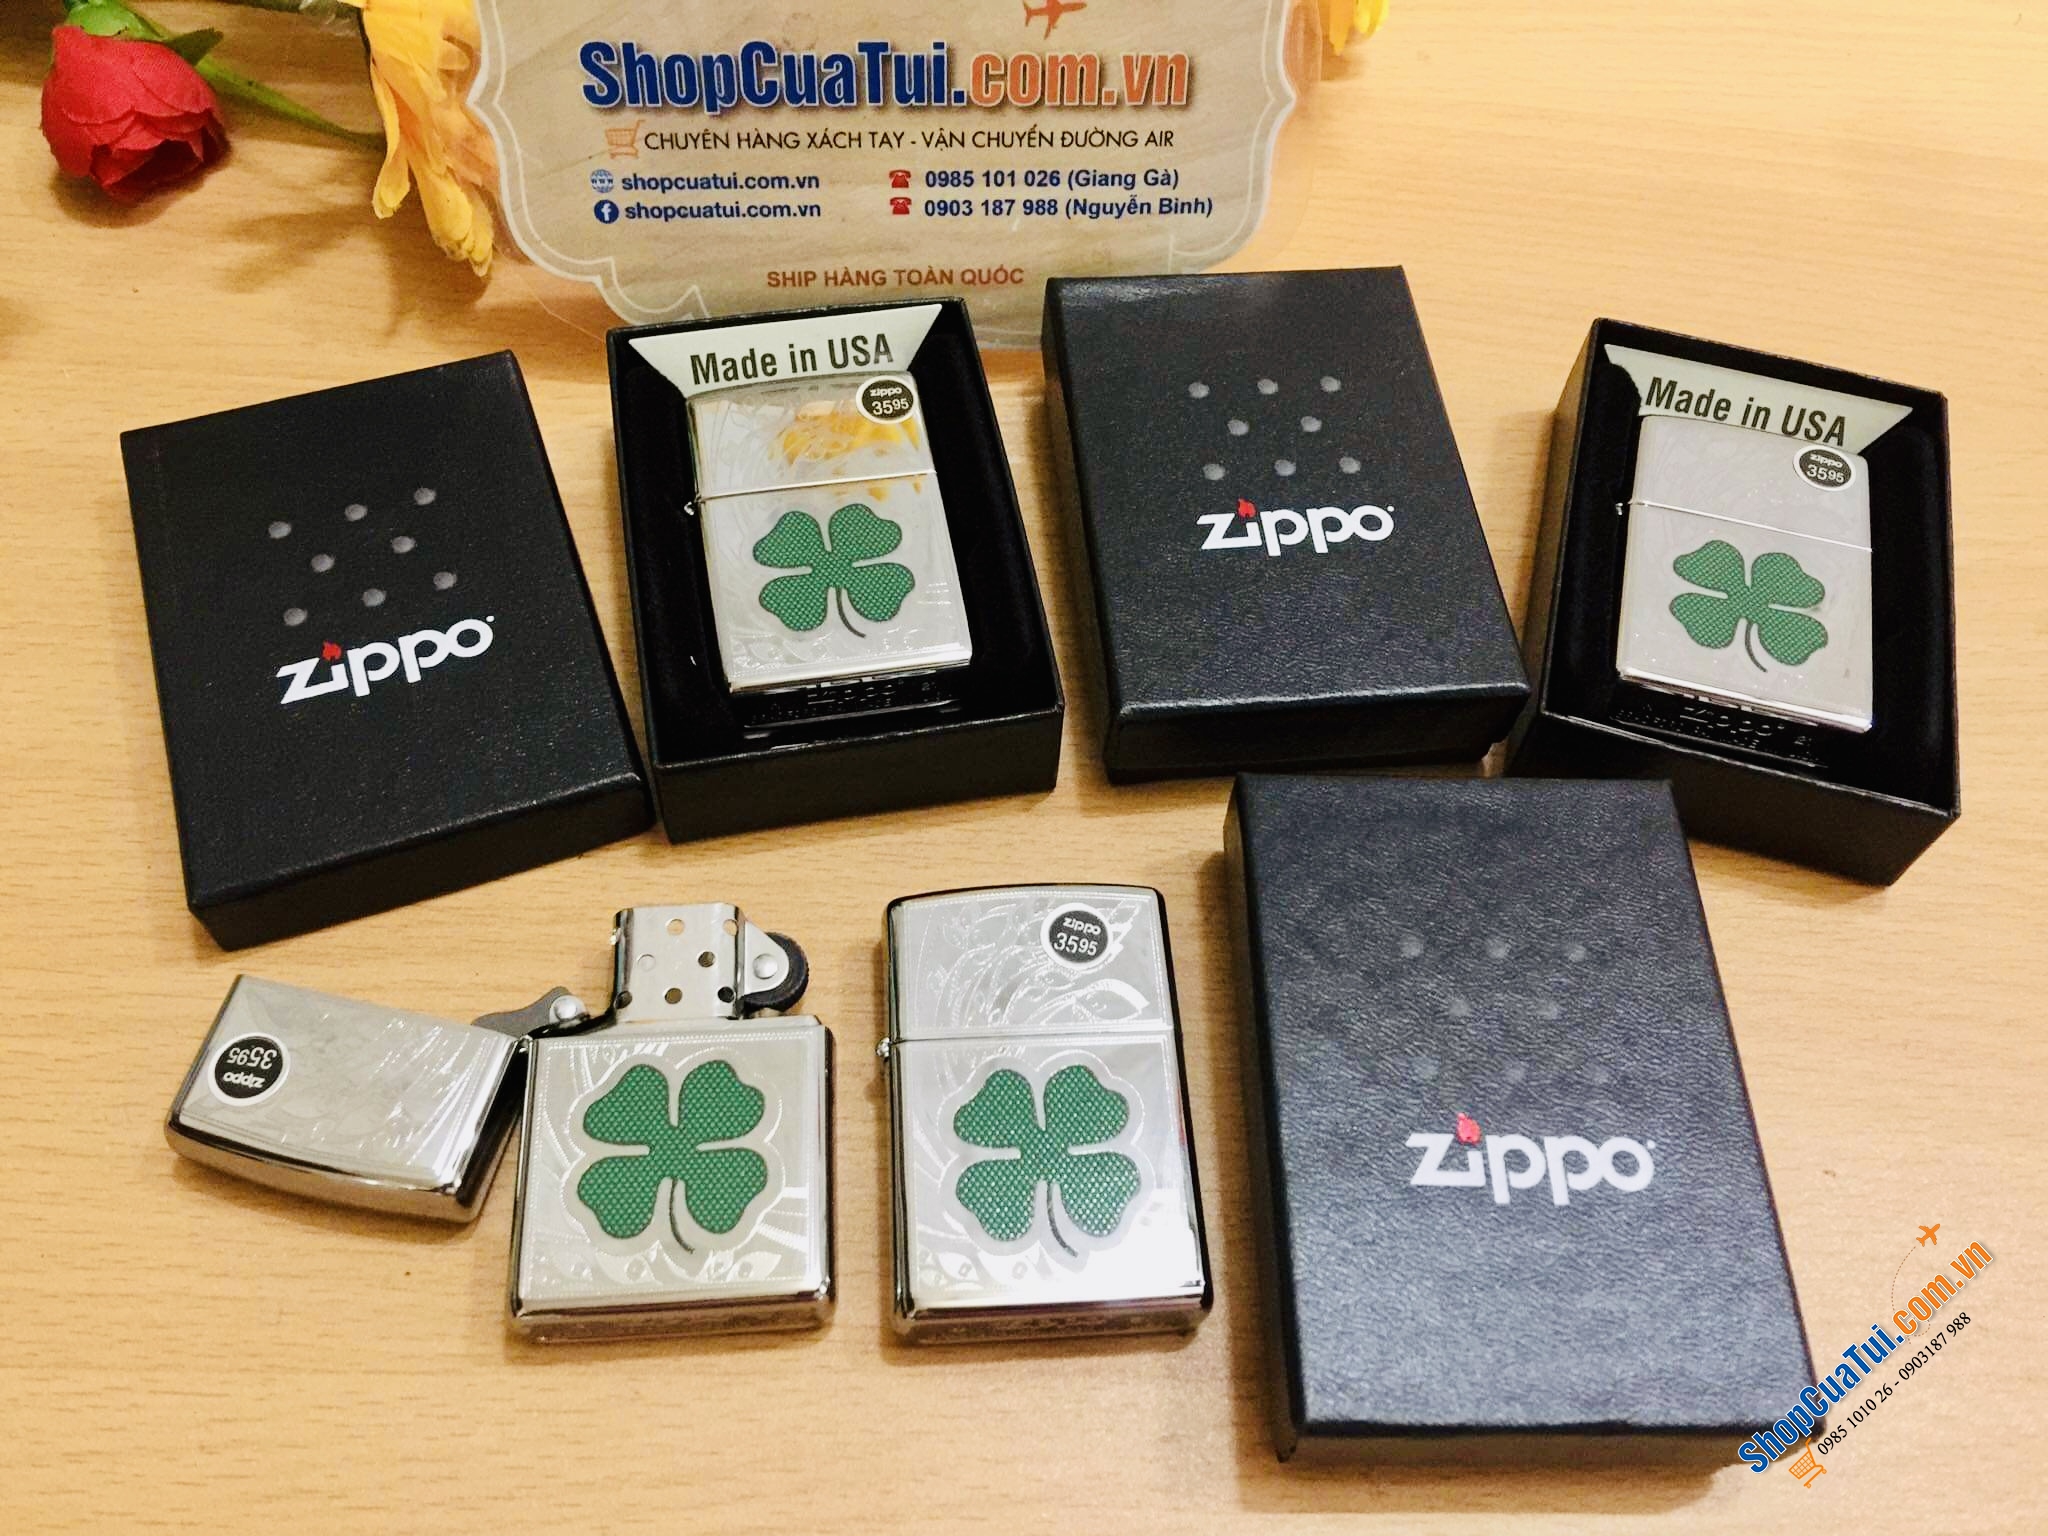 Bật lửa Zippo cỏ 4 lá - sắm hoặc tặng để đem lại may mắn cho nhau - Made in USA